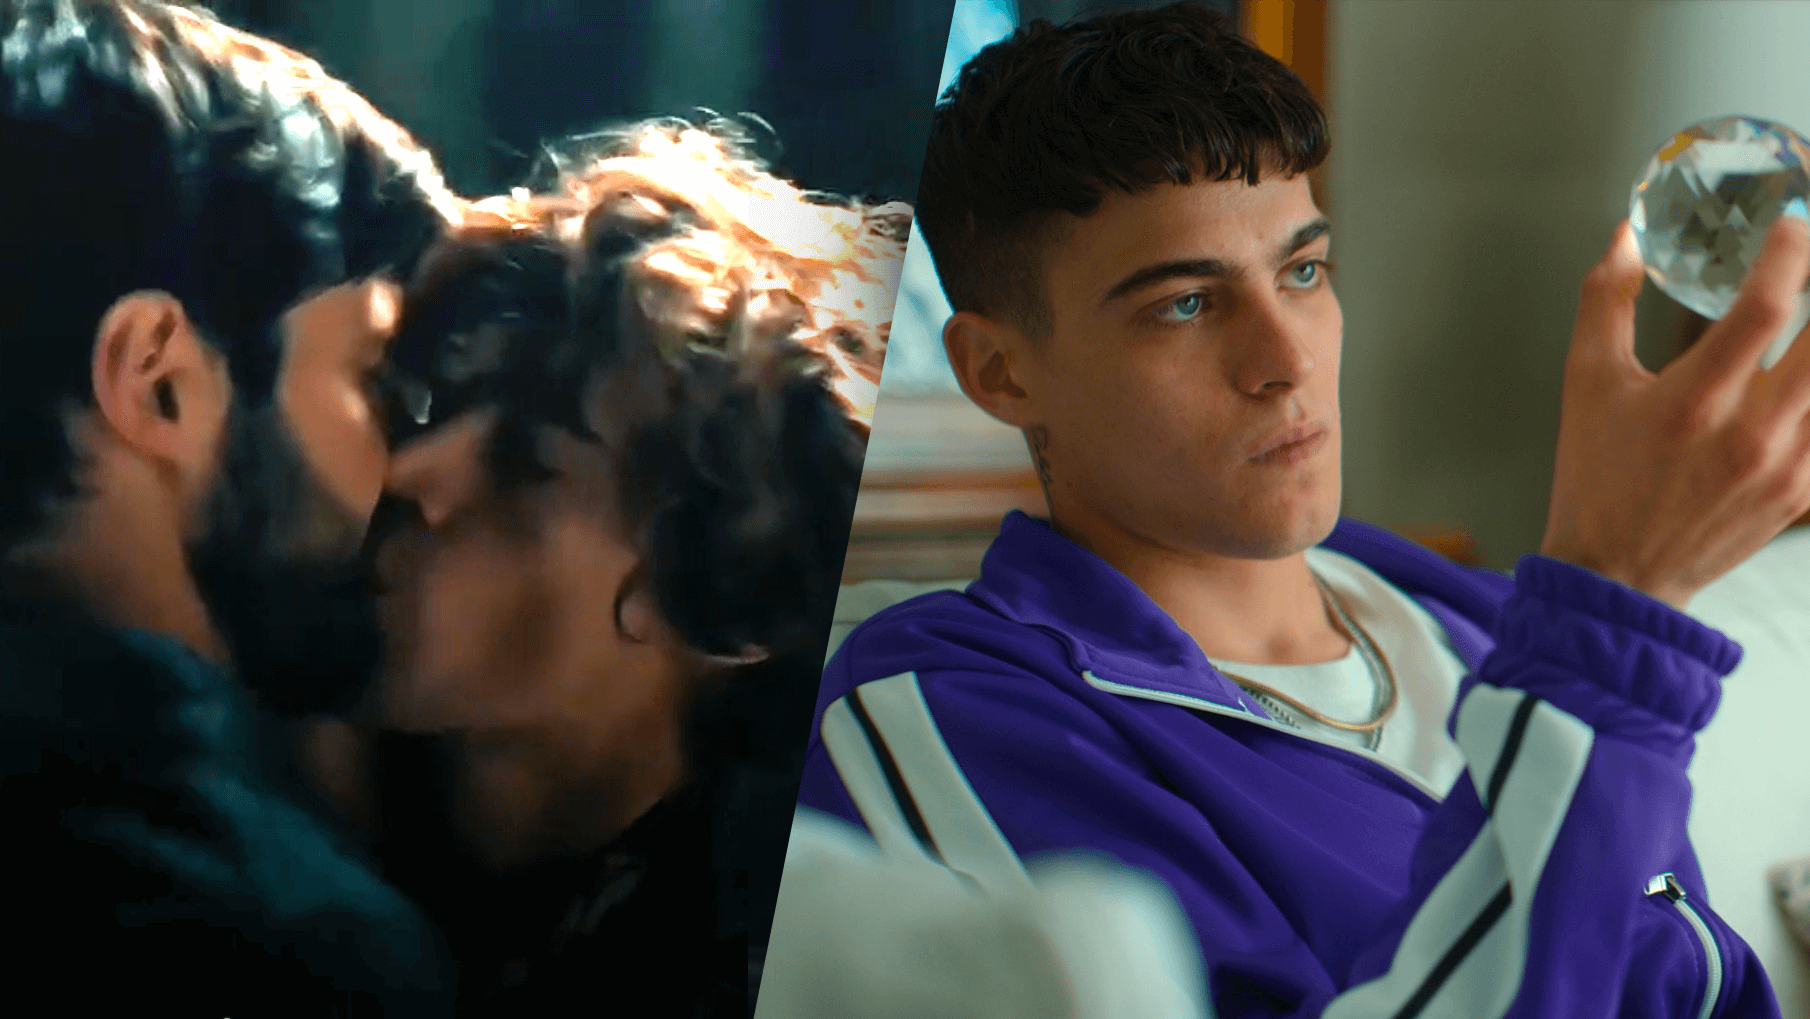 A sinistra la scena del bacio tra Giulio (Filippo Scicchitano) e Alessandro (Lorenzo Zurzolo) in "The weekend" - a destra Zurzolo nei panni di Daniele in "Prisma".